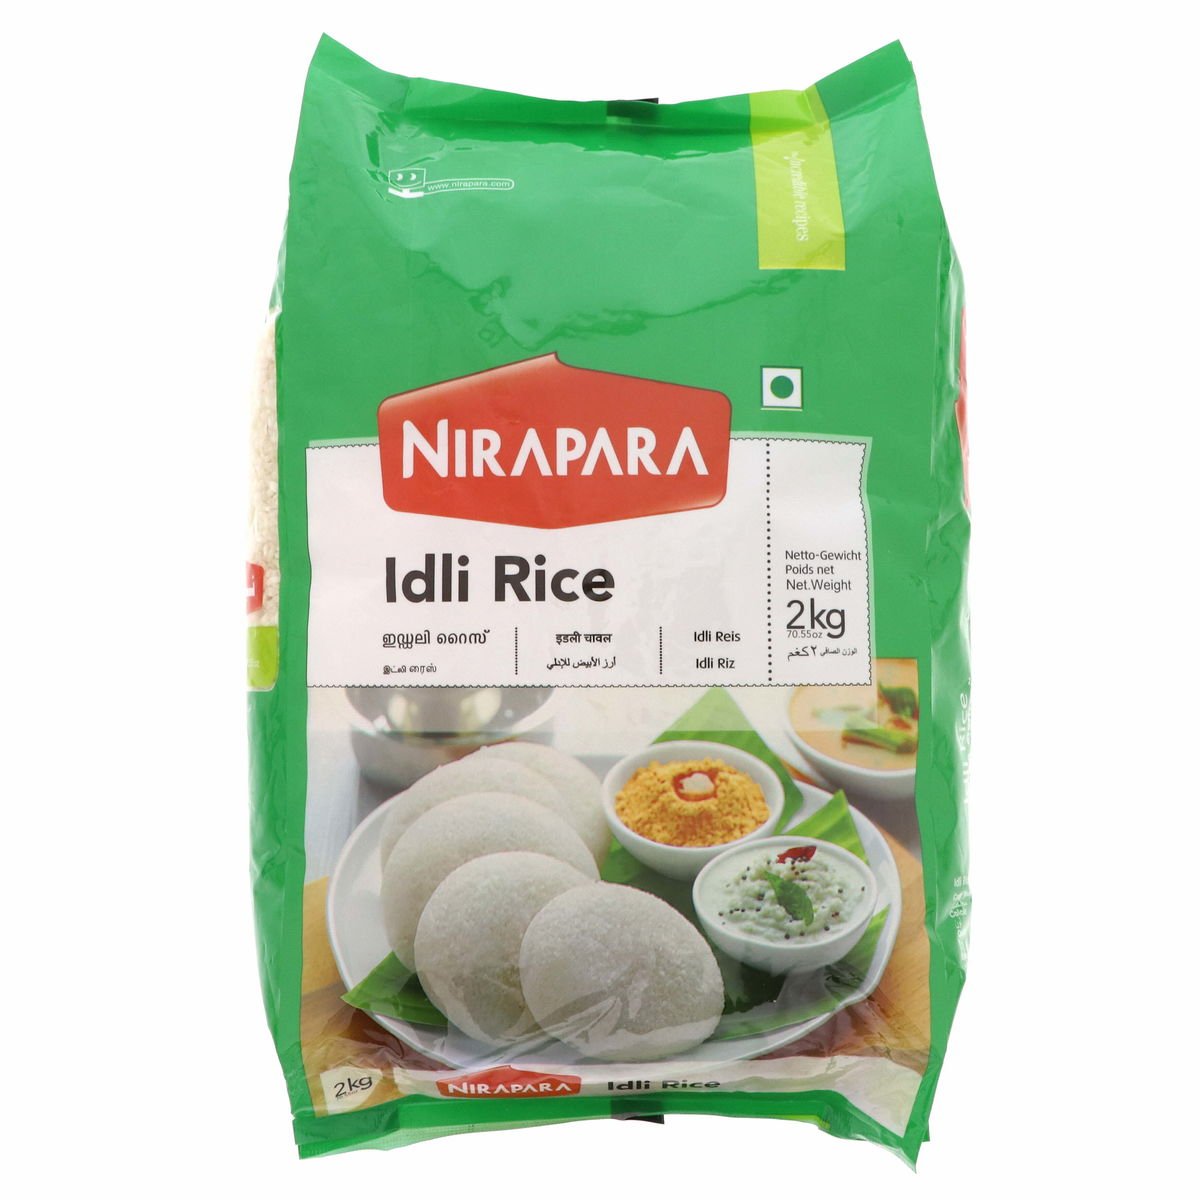 Nirapara Idli Rice 2 kg